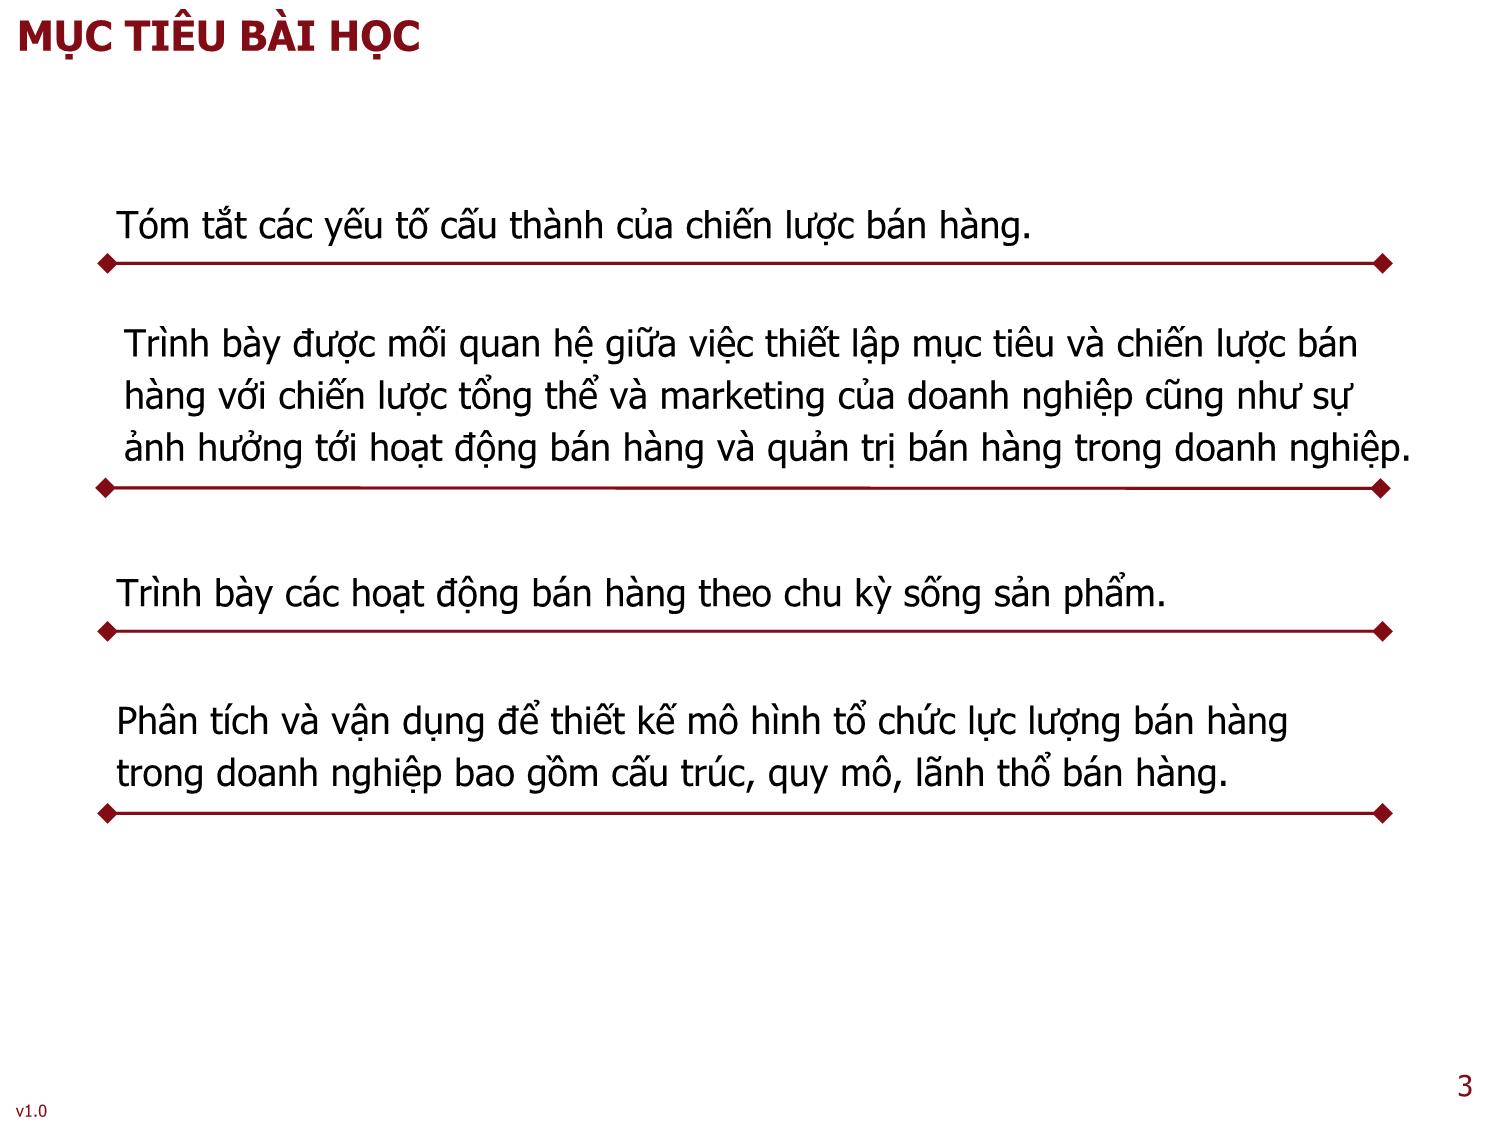 Bài giảng Quản trị bán hàng - Bài 2: Quản trị bán hàng chiến lược và cơ cấu tổ chức trong doanh nghiệp - Nguyễn Thu Lan trang 3